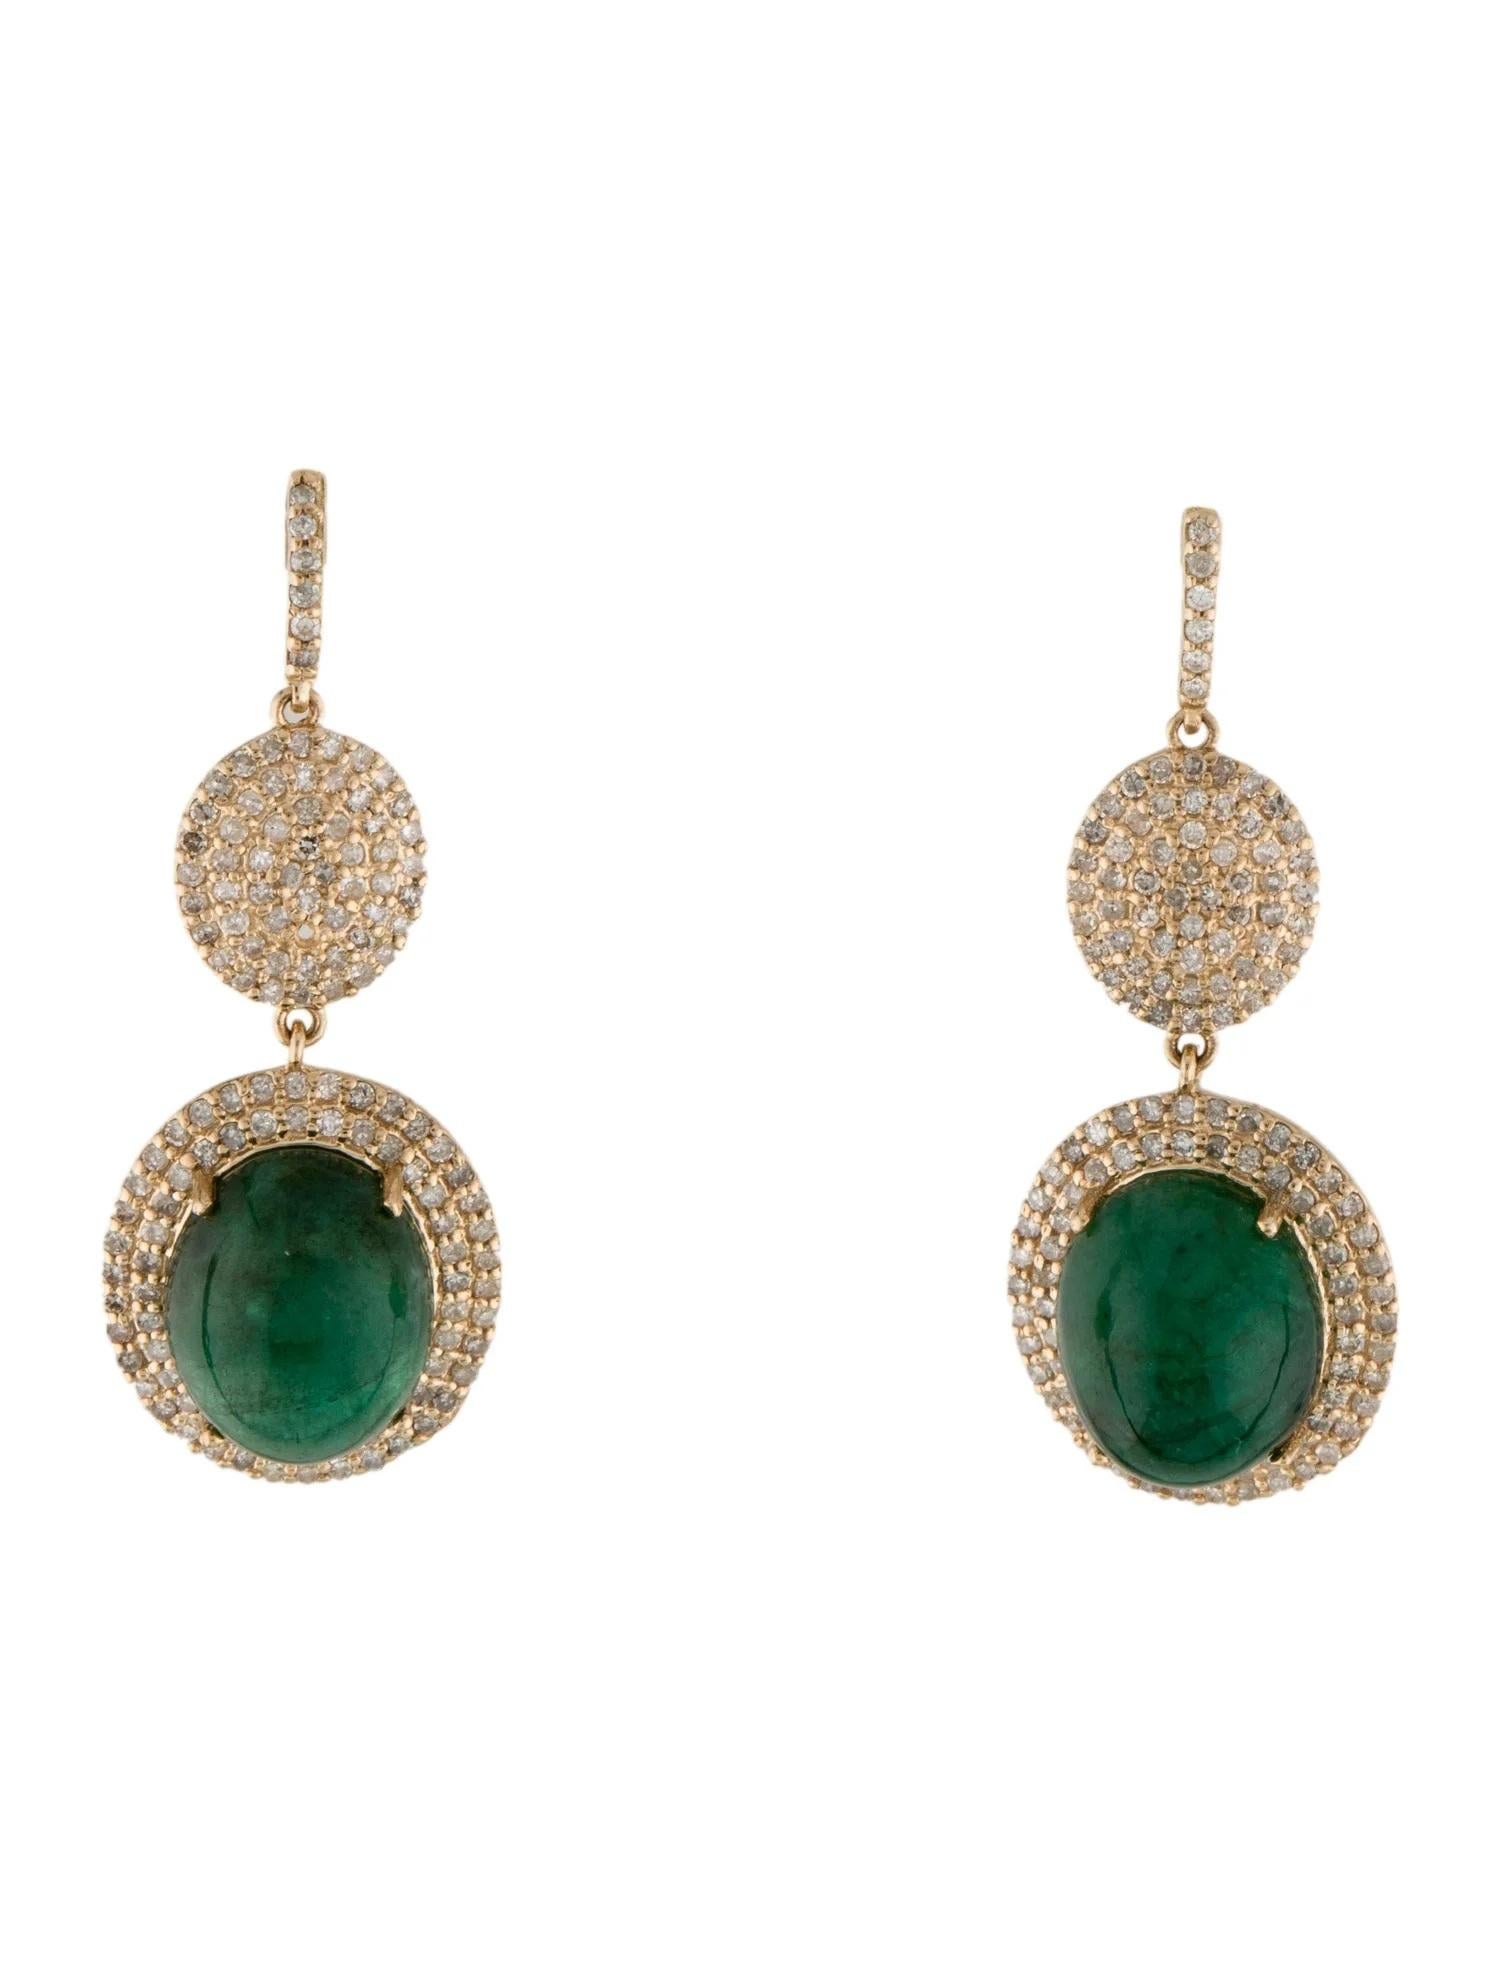 Oval Cut 14K 10.99ctw Emerald & Diamond Drop Earrings  Cabochon Oval Emeralds  Single 